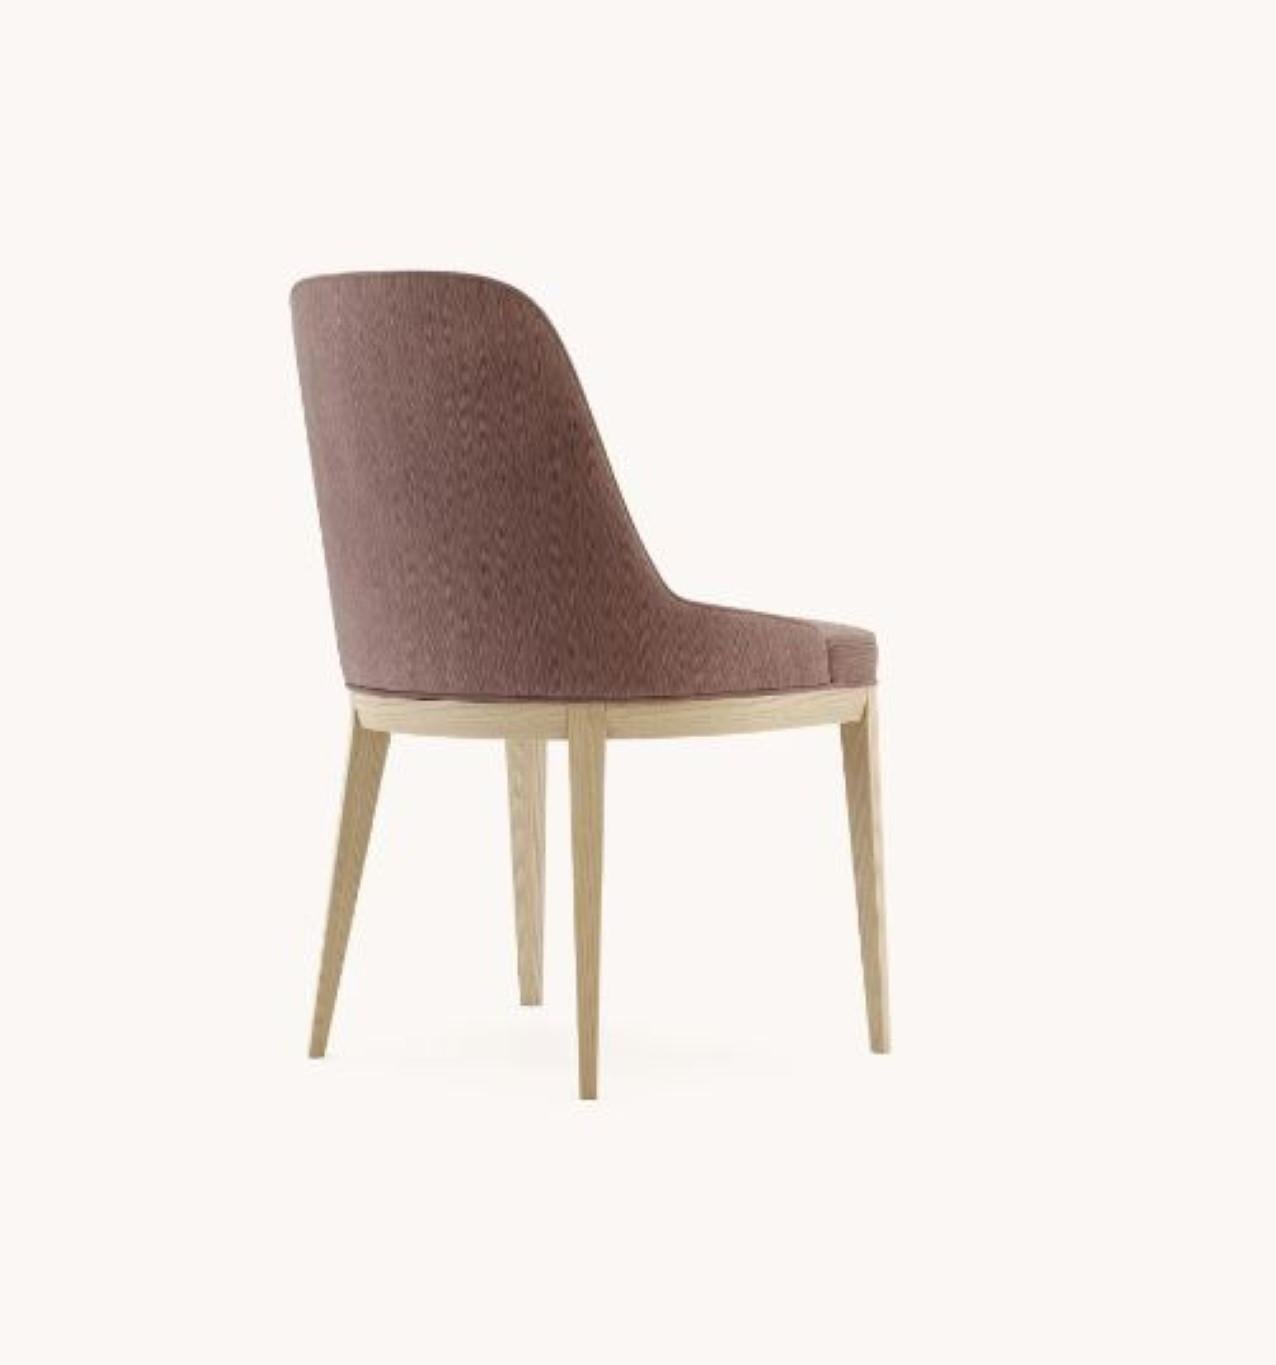 Post-Modern Anna Chair by Domkapa